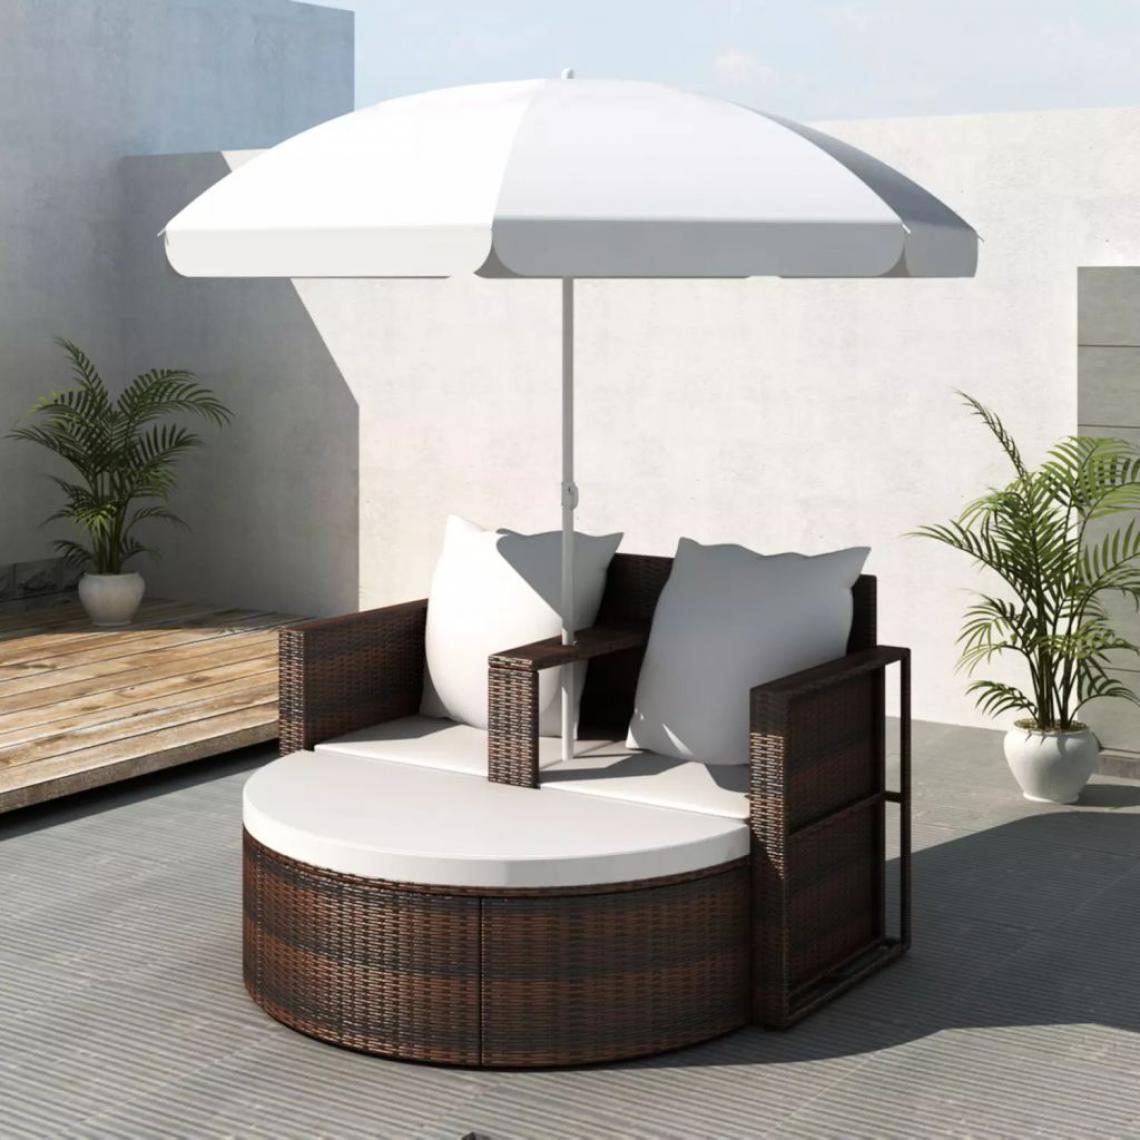 Hucoco - Canapé de 2 places rond brun avec le parasol - Brun - Chaises de jardin